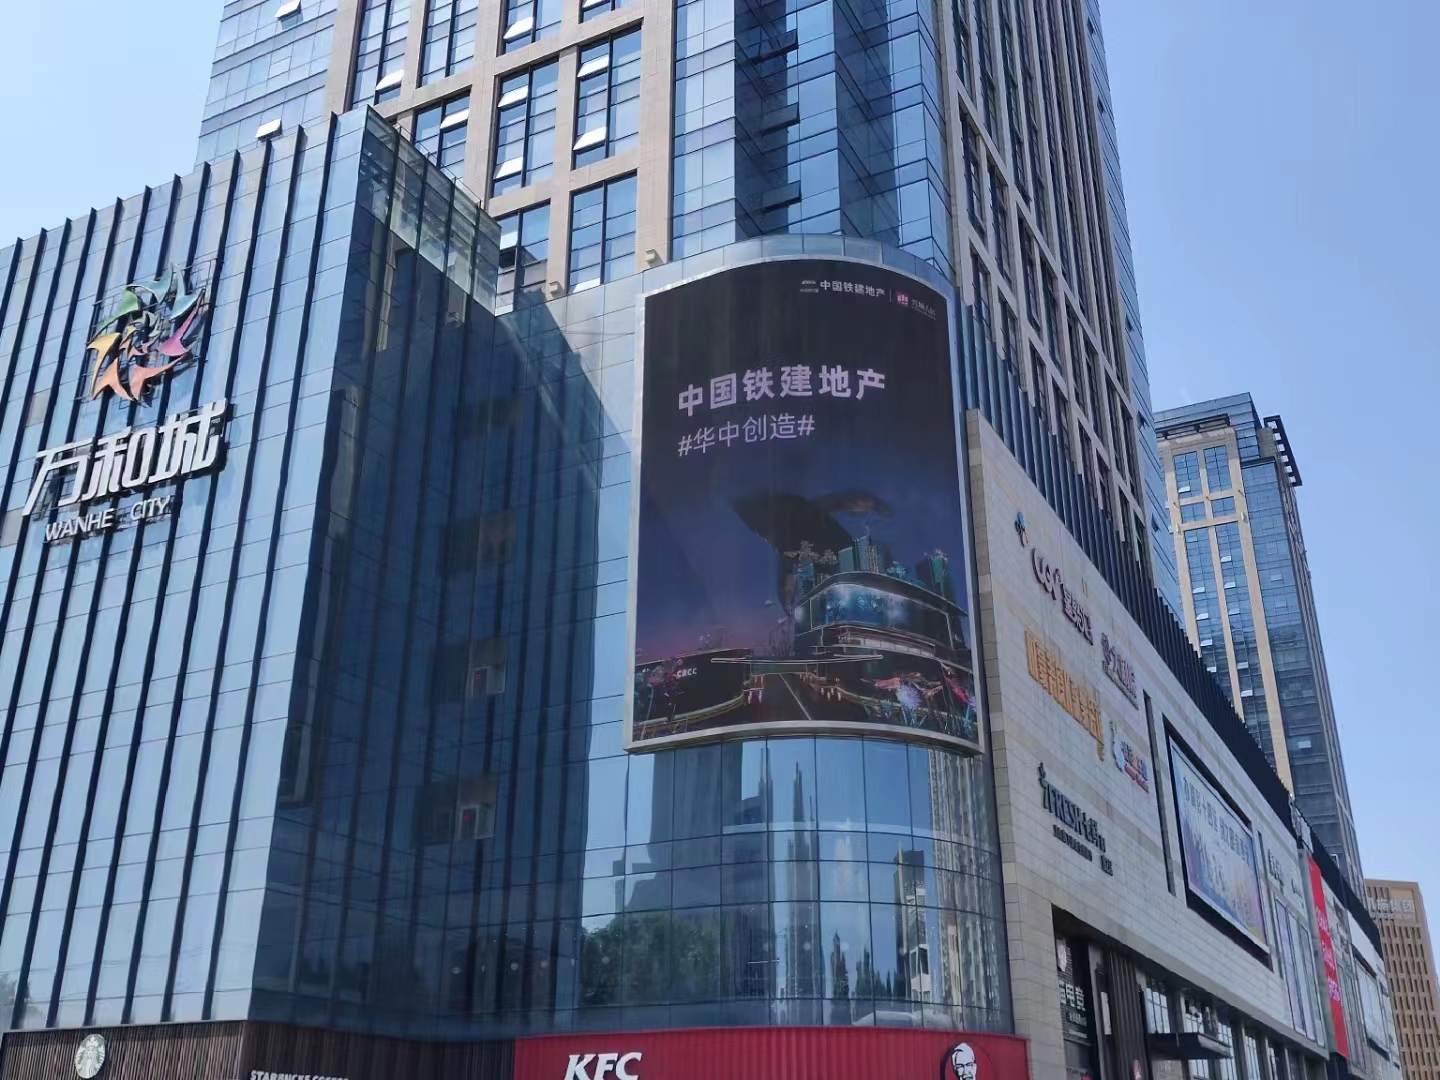 陕西西安新城区东二环华东万和城商超卖场LED屏